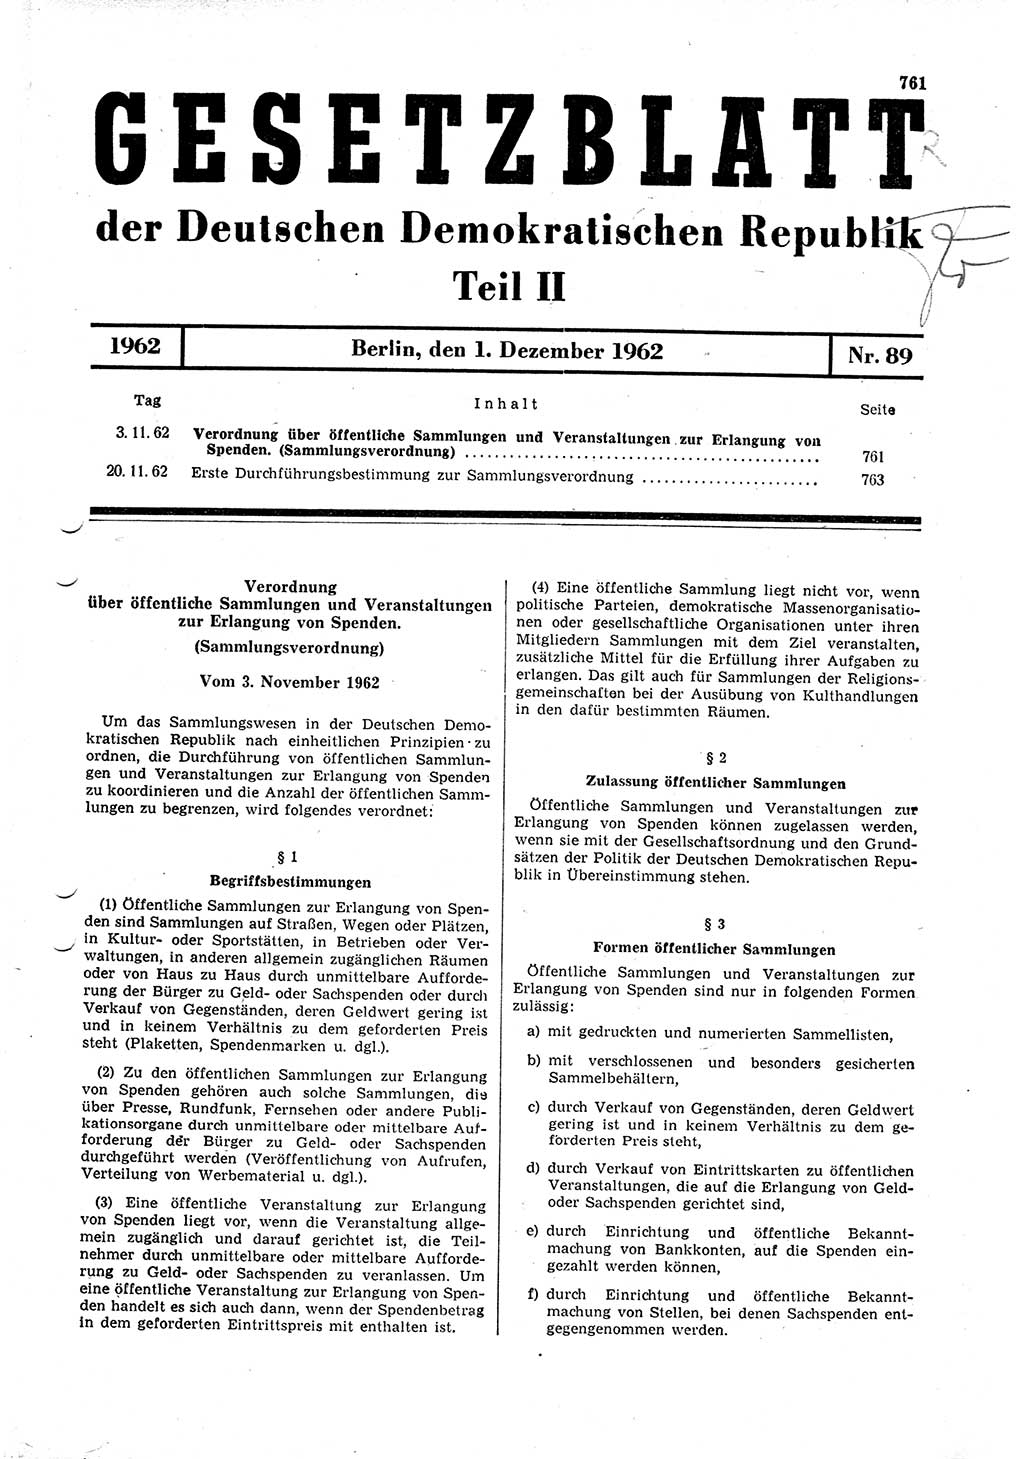 Gesetzblatt (GBl.) der Deutschen Demokratischen Republik (DDR) Teil ⅠⅠ 1962, Seite 761 (GBl. DDR ⅠⅠ 1962, S. 761)